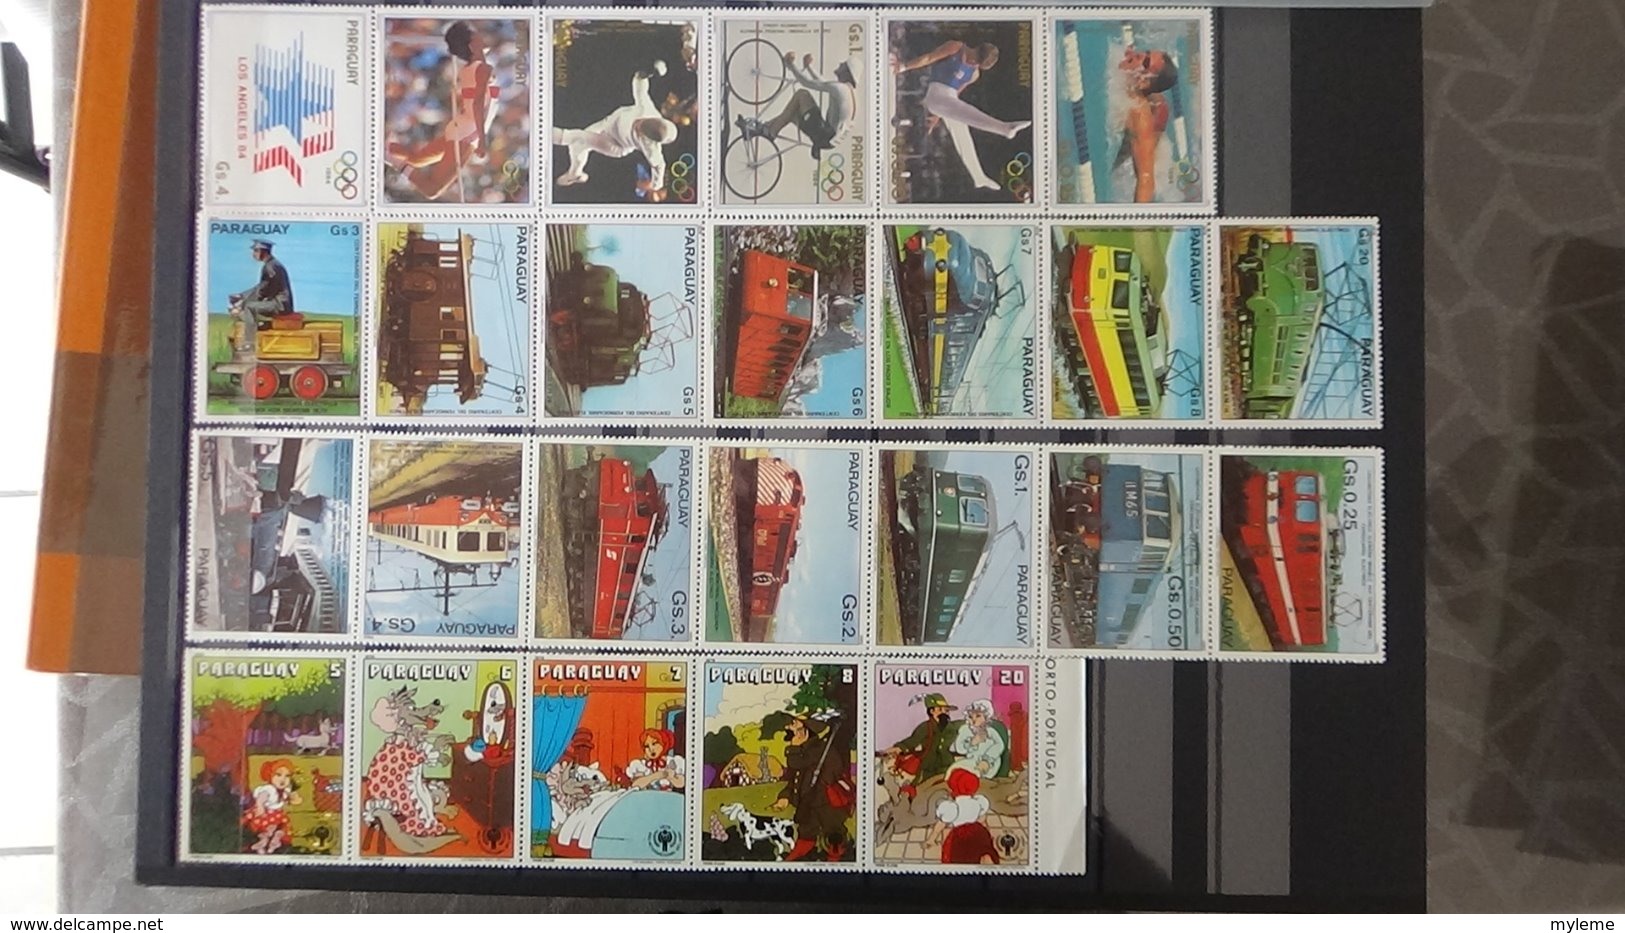 Collection timbres et blocs ** de différents pays A saisir !!!